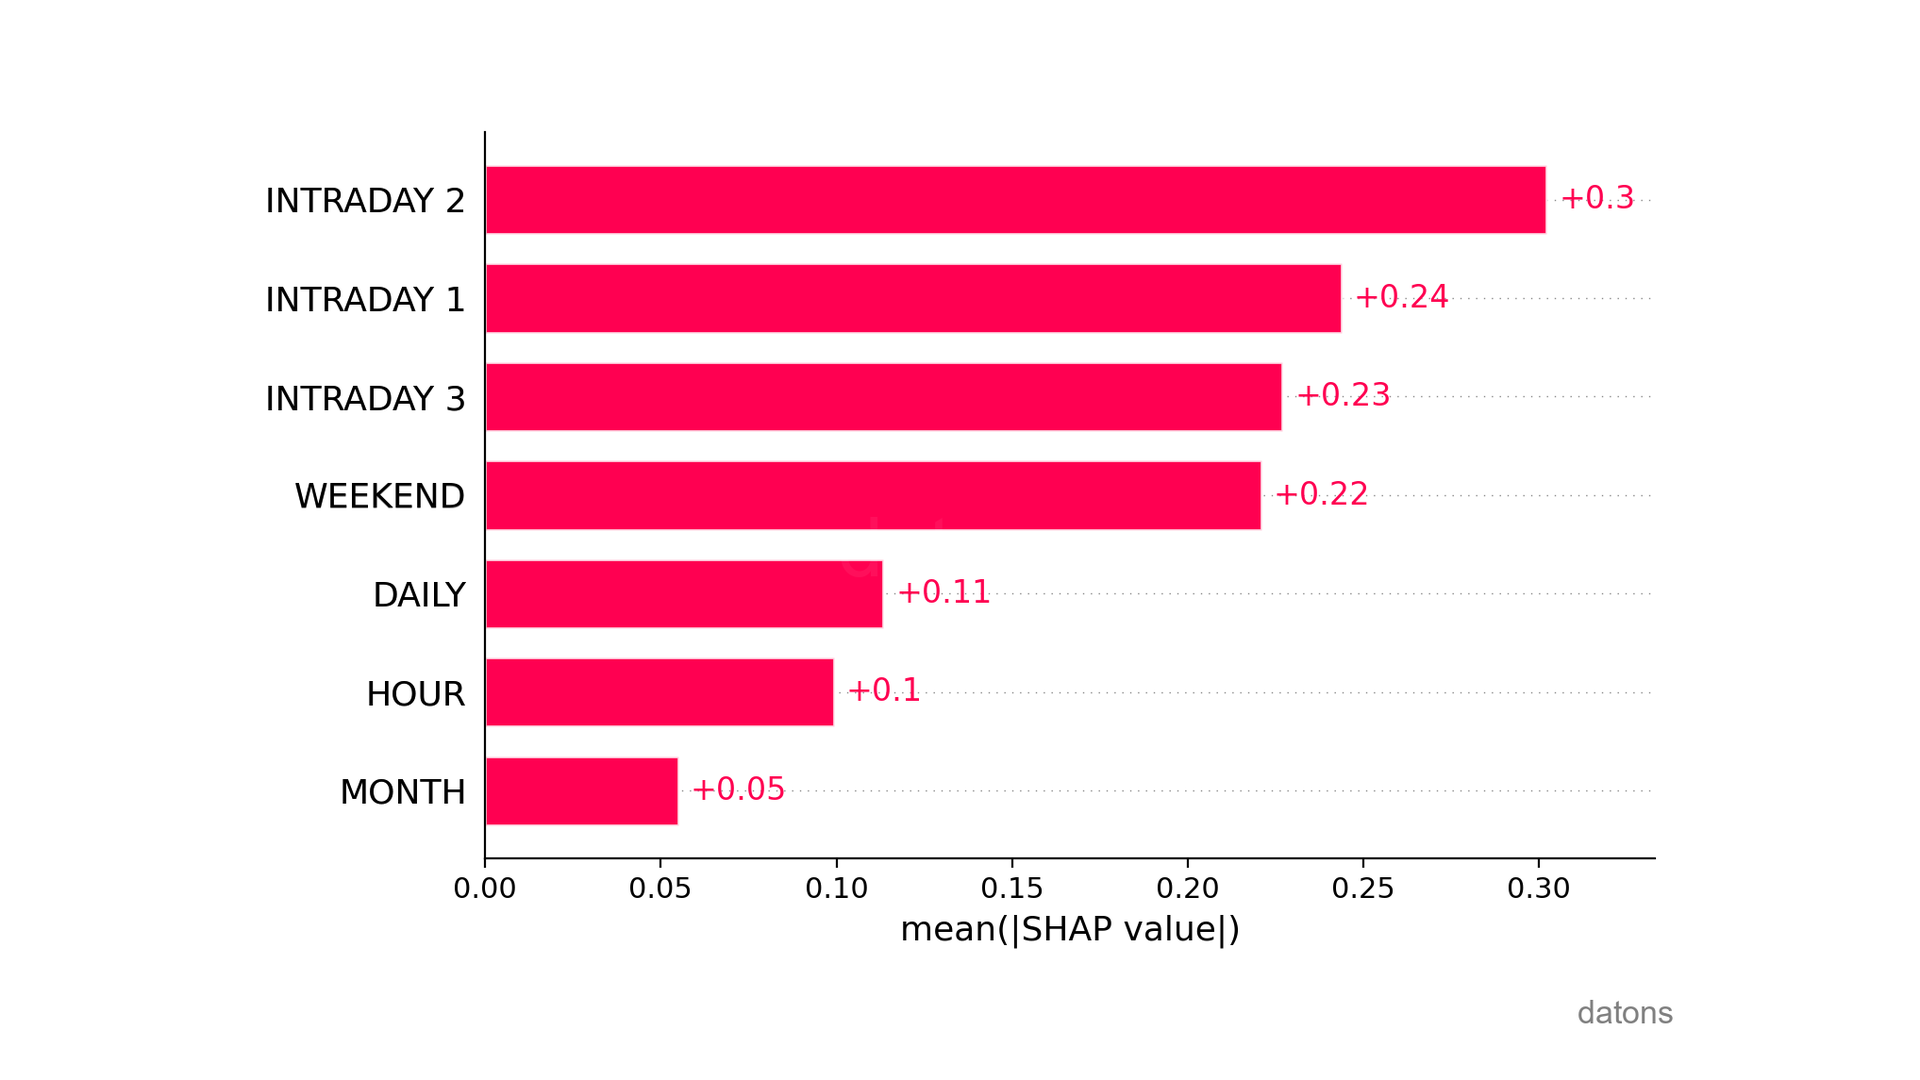 Gráfico de barras SHAP indicando la importancia de las variables, siendo el mercado intradiario 2 el más influyente en la detección de anomalías.